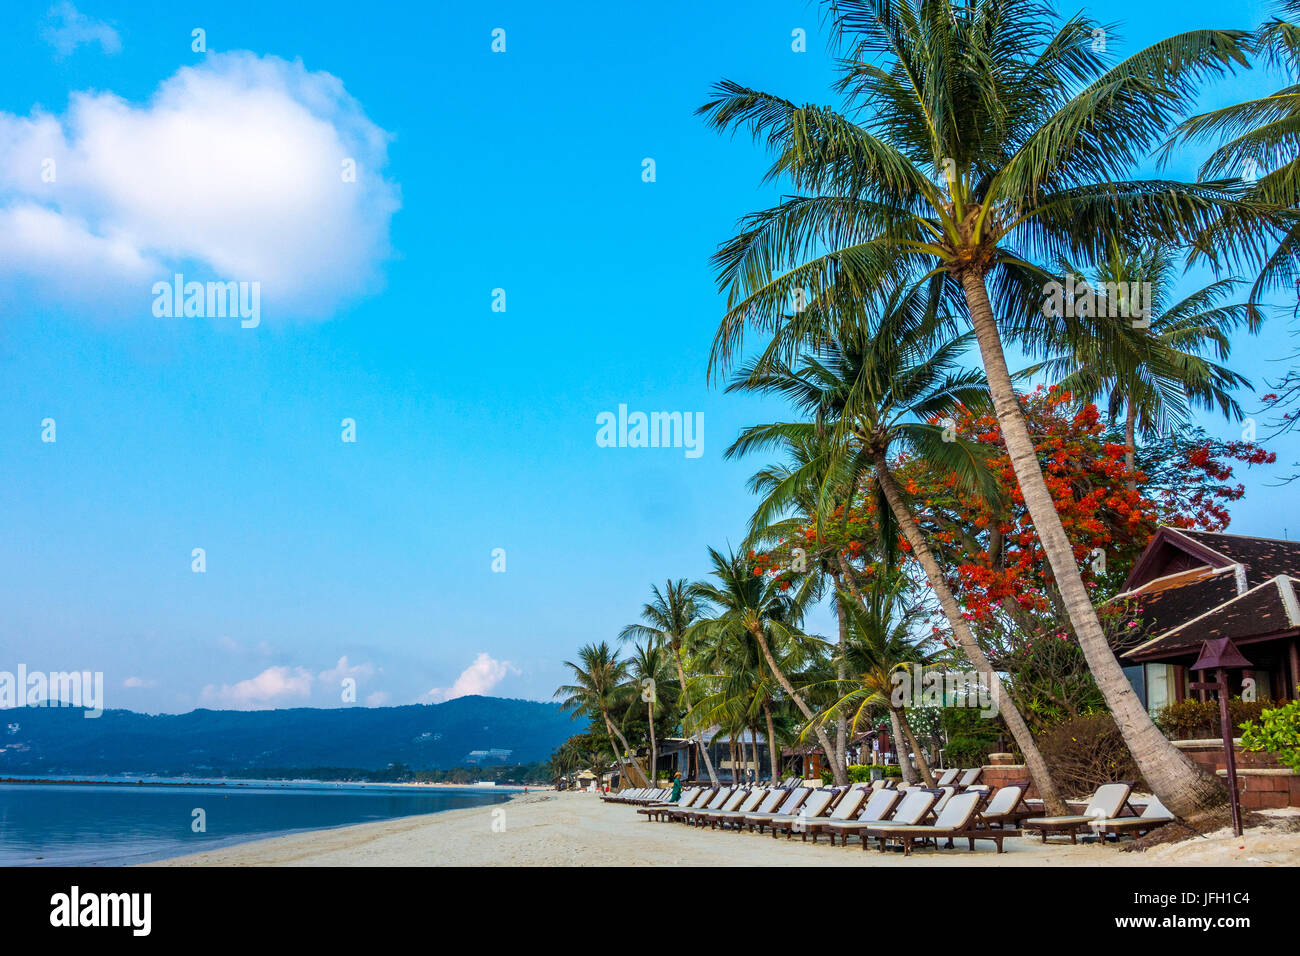 Transats sur la plage d'attendre pour les touristes, la plage de Chaweng, île de Ko Samui, Thaïlande, Asie Banque D'Images